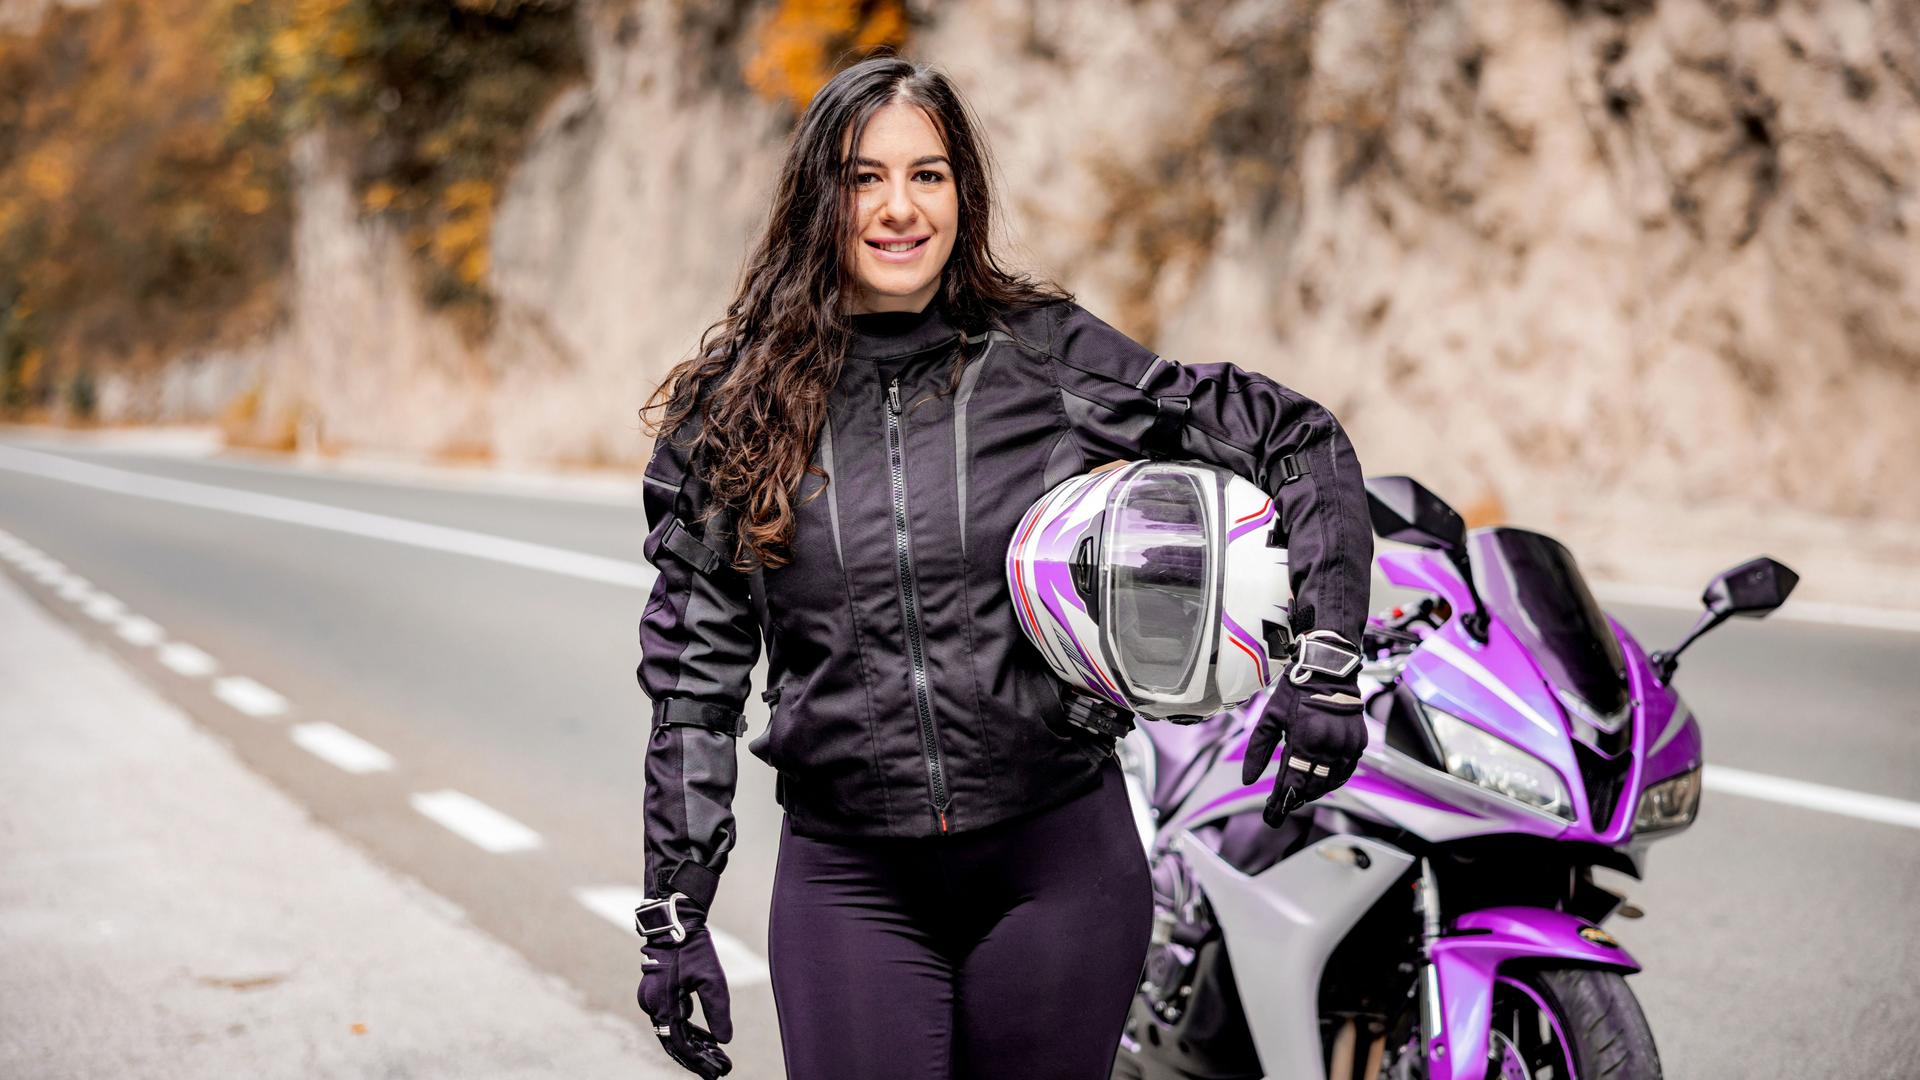 Junge Frau mit Helm unterm arm steht vor einem lilafarbenen Motorrad an einer Landstraße und lächelt in die Kamera.